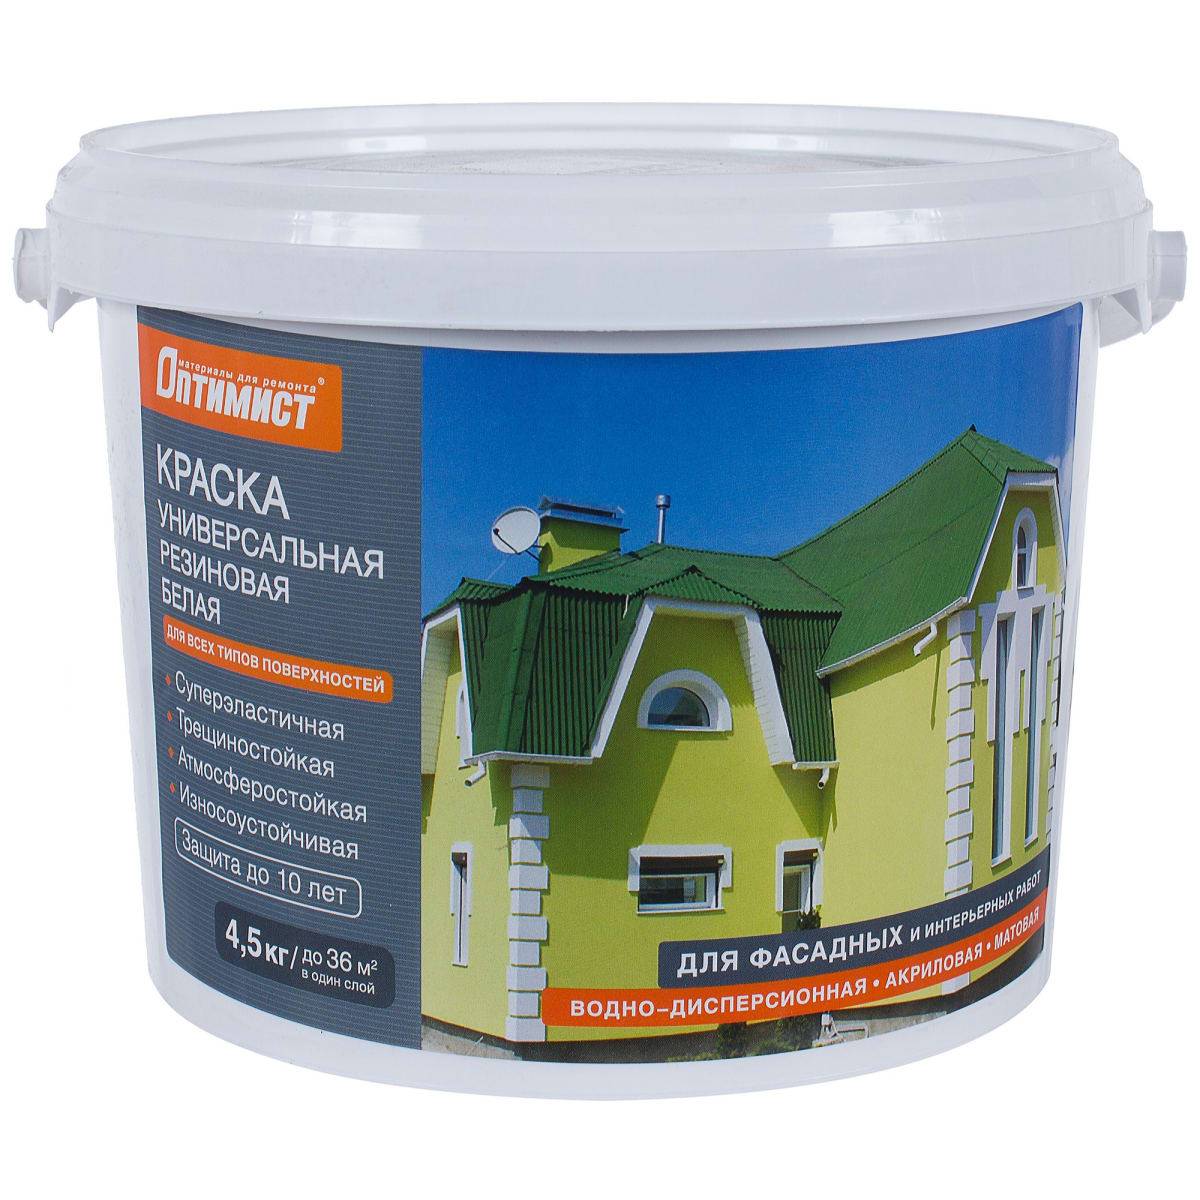 Особенности износостойкой краски на резиновой основе для пола и стен из бетона